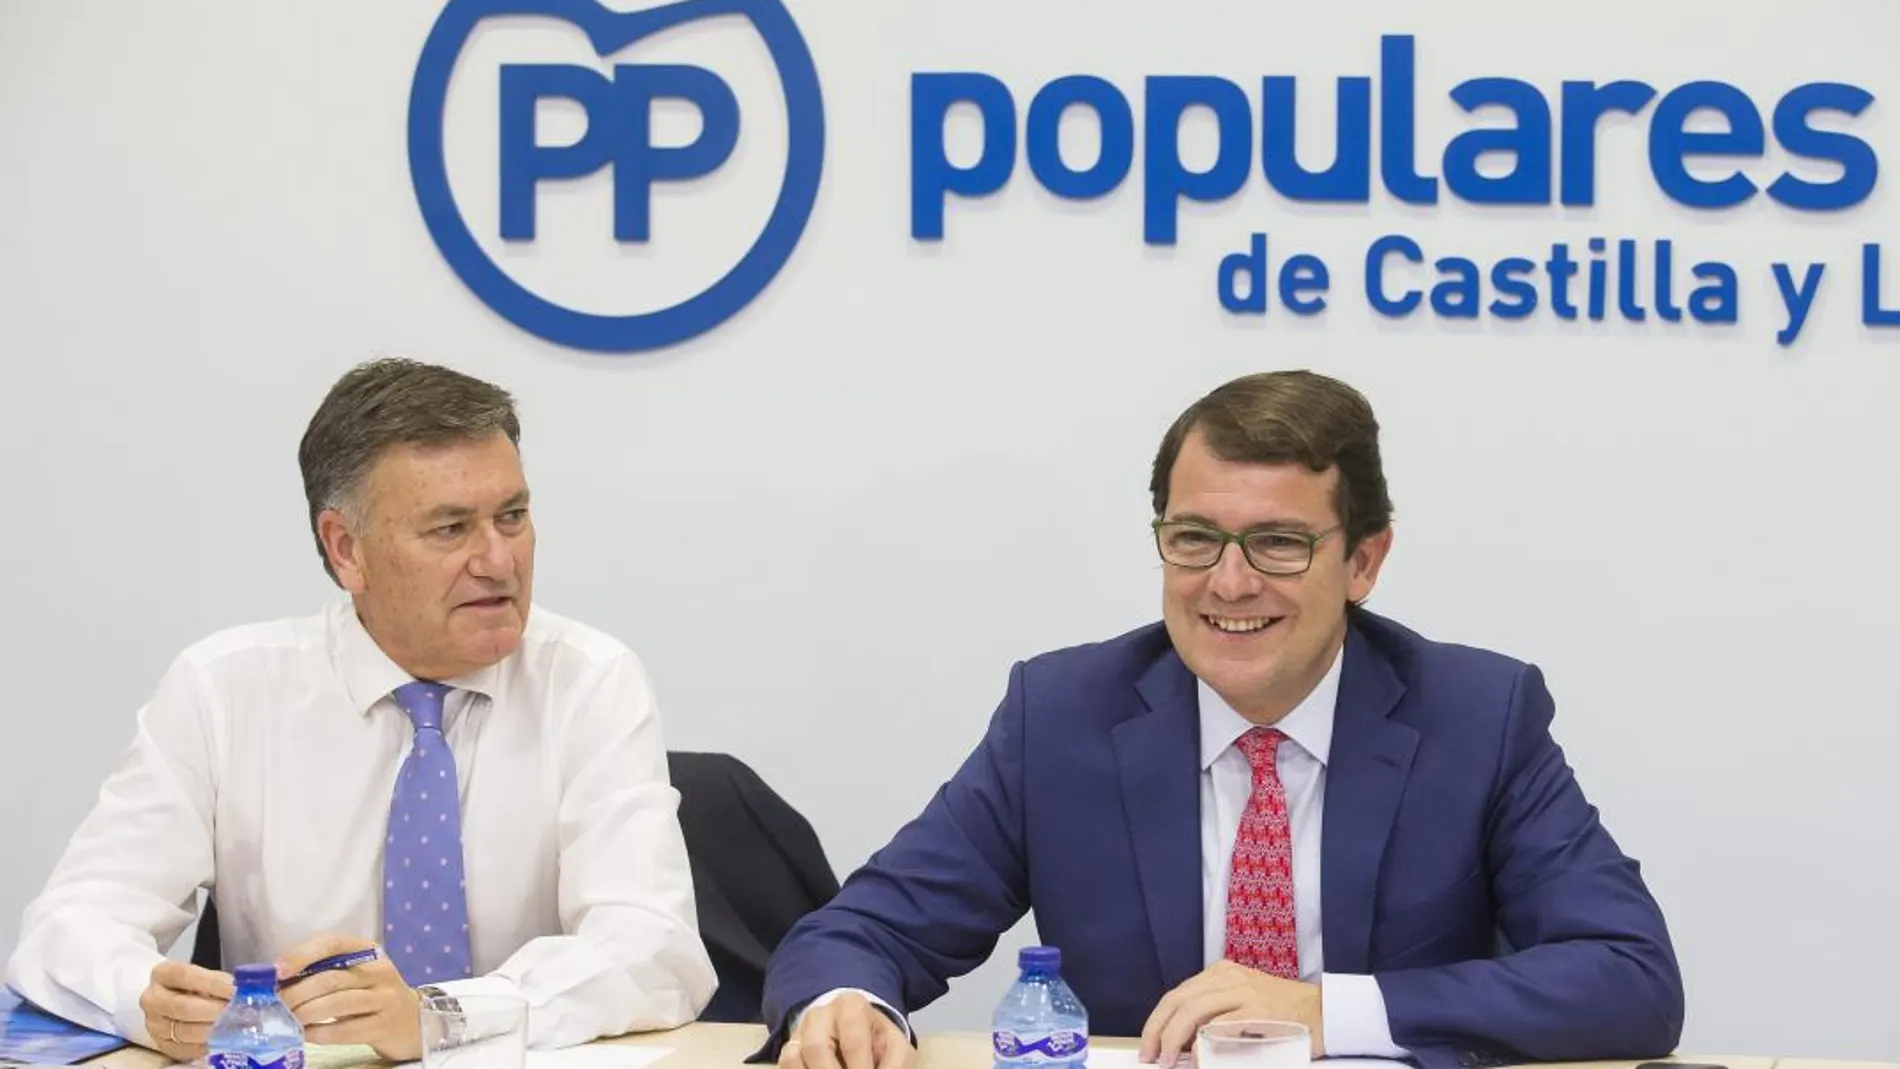 El presidente del PP, Alfonso Fernández Mañueco, preside una reunión con los máximos mandatarios provinciales del partido. En la imagen junto al secretario autonómico, Francisco Vázquez